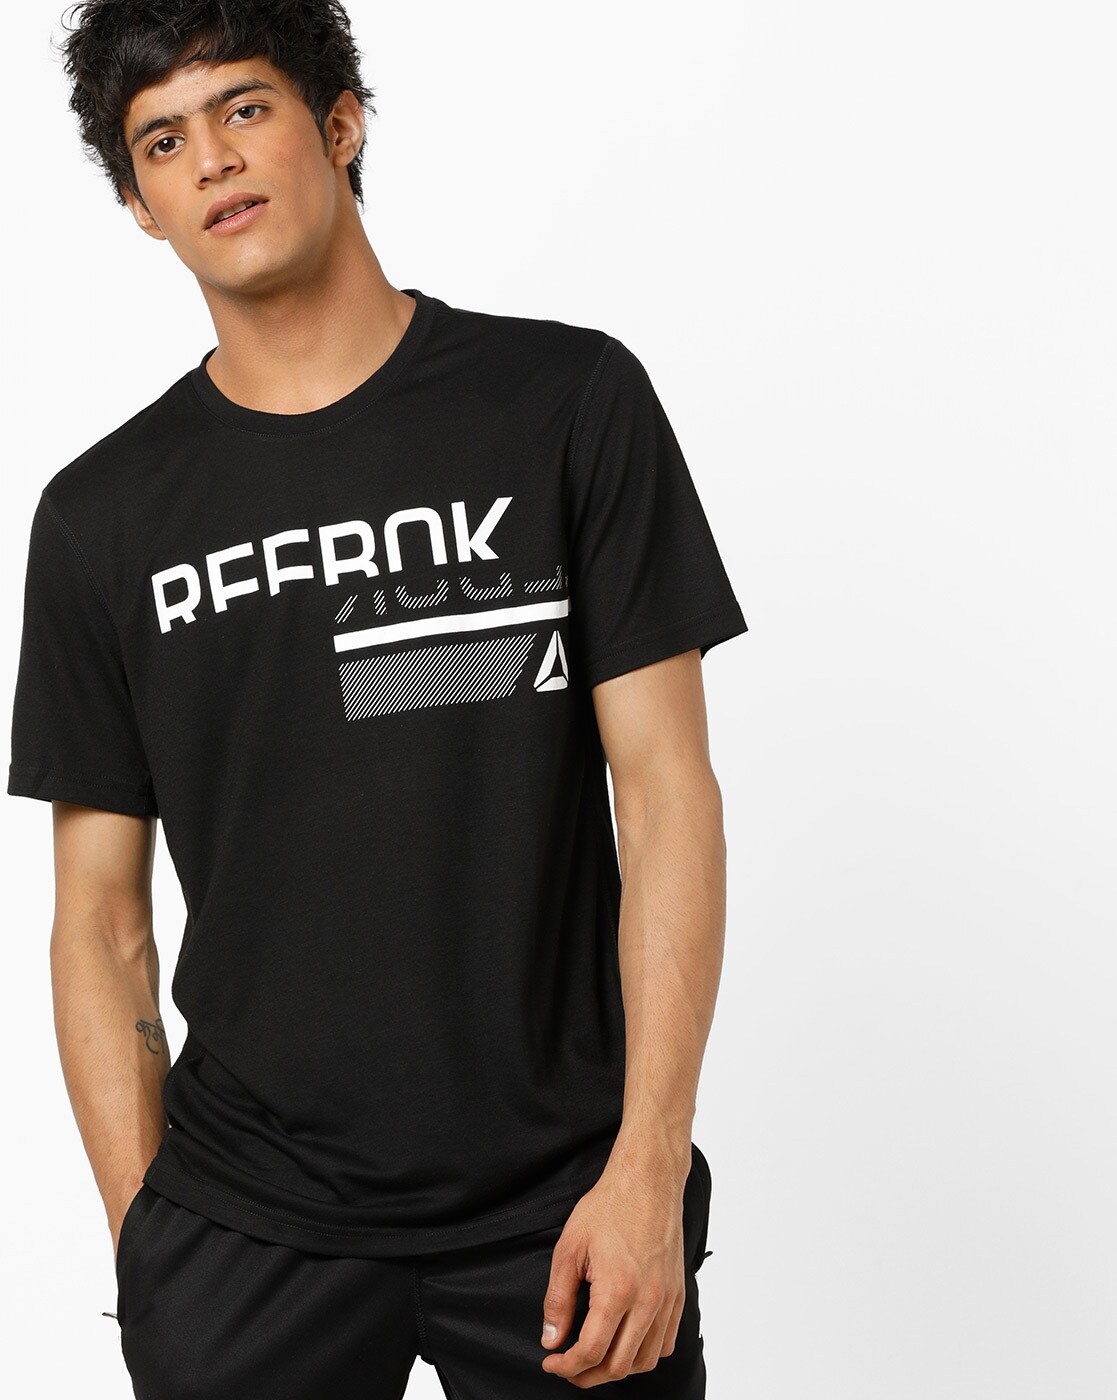 reebok customized t shirts